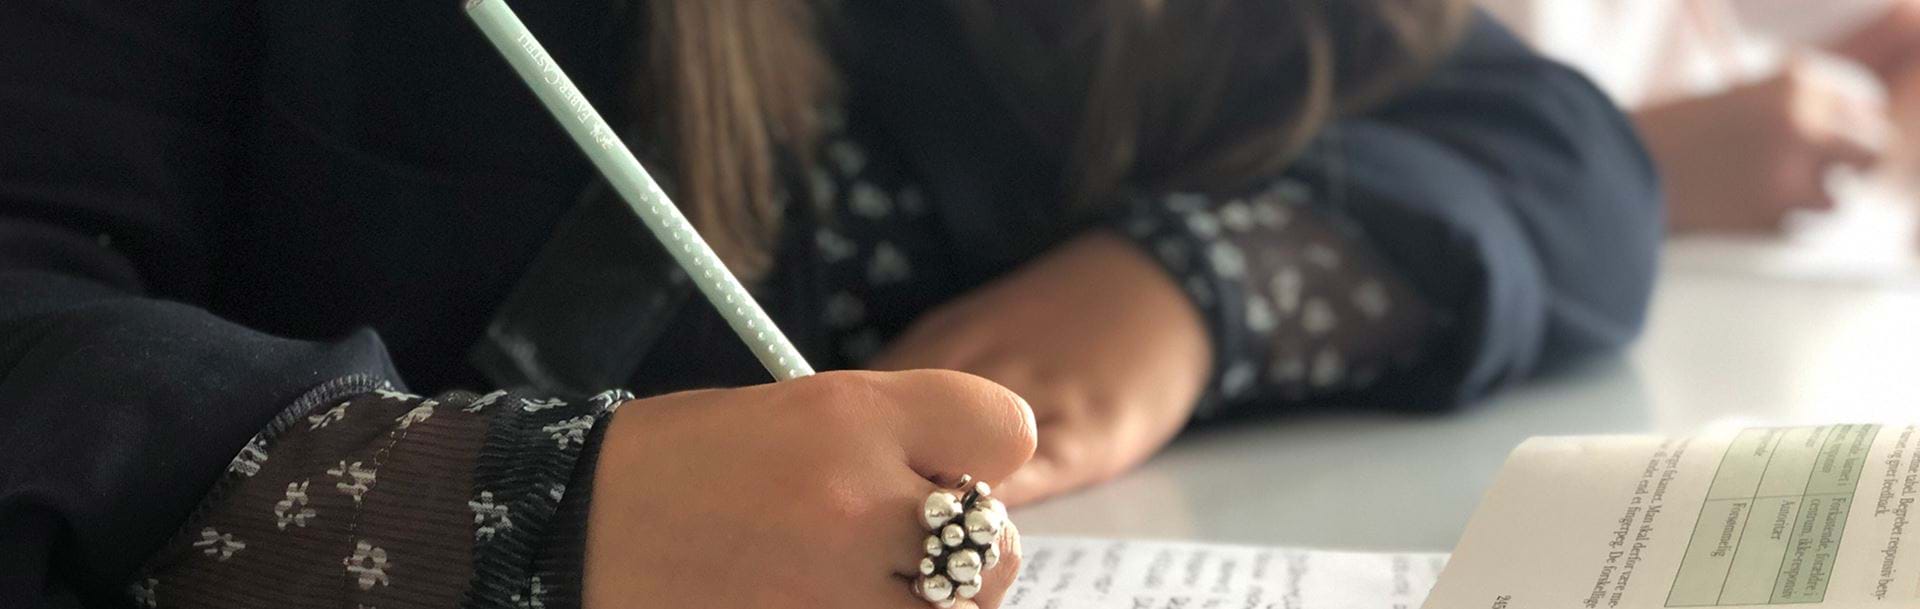 Pige skriver noter i hånden